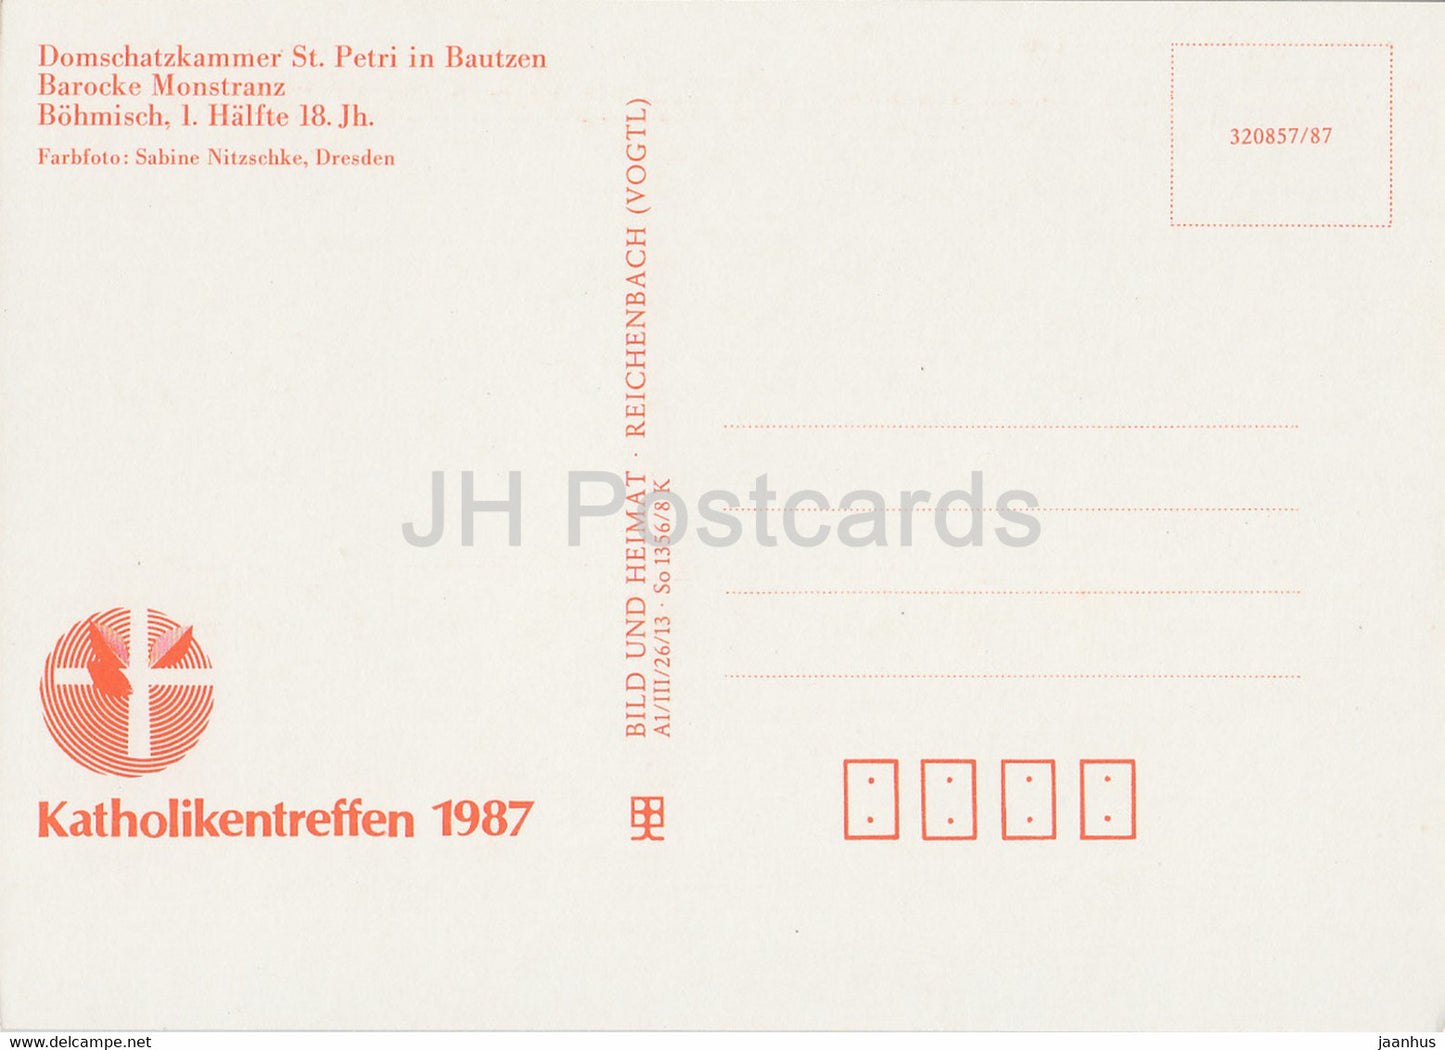 Barocke Monstranz - Domschatzkammer St. Petri in Bautzen - 1987 - DDR Deutschland - unbenutzt